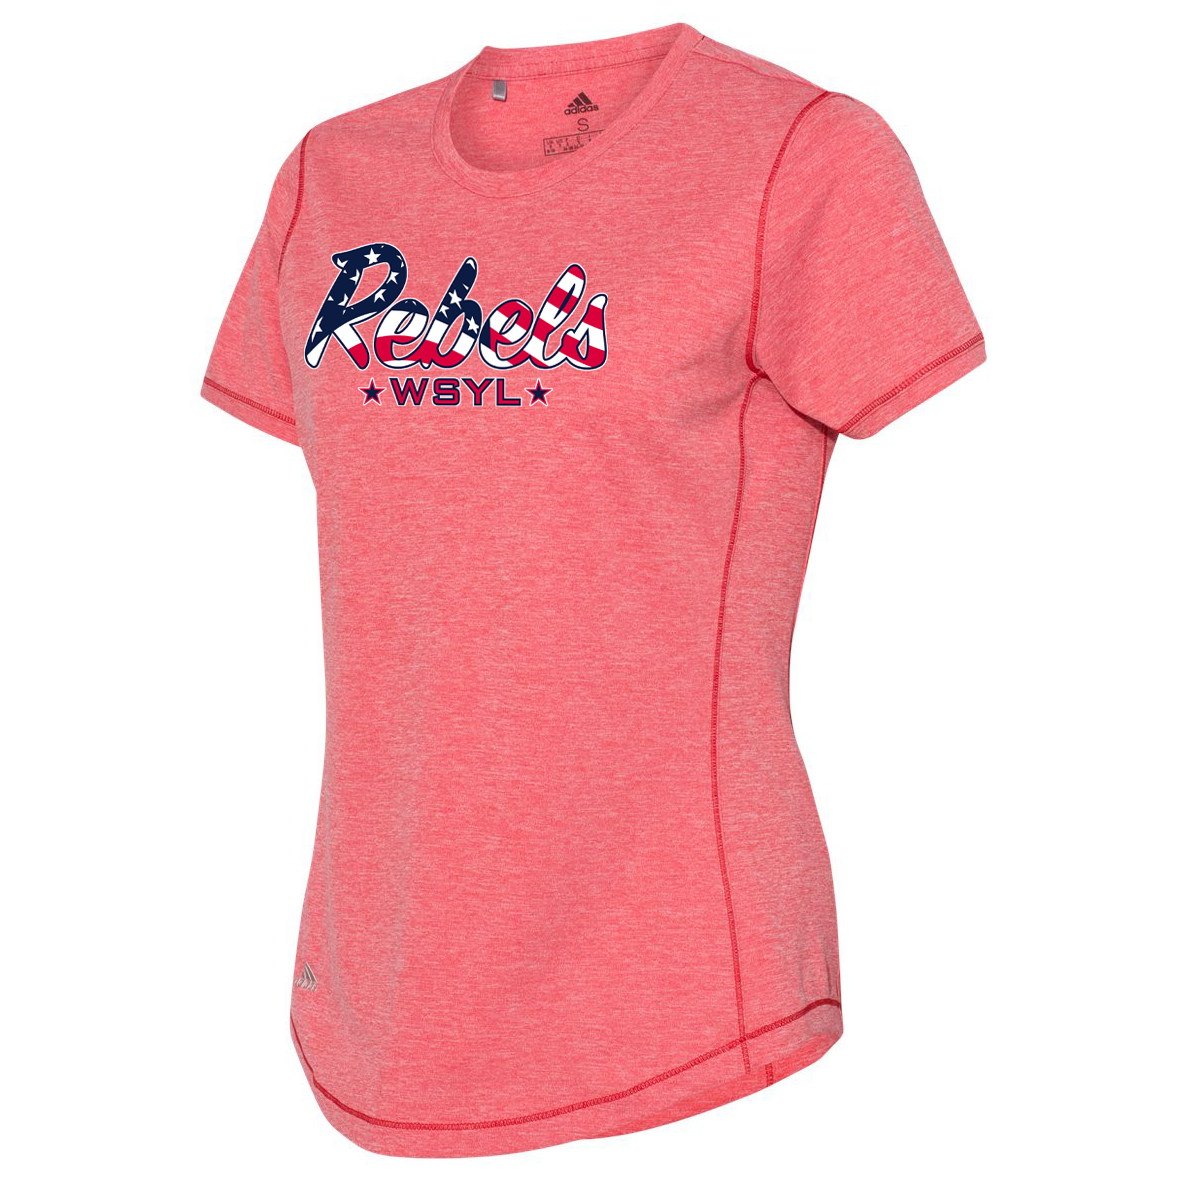 Rebels World Series Youth League Women's Adidas Sport T-Shirt